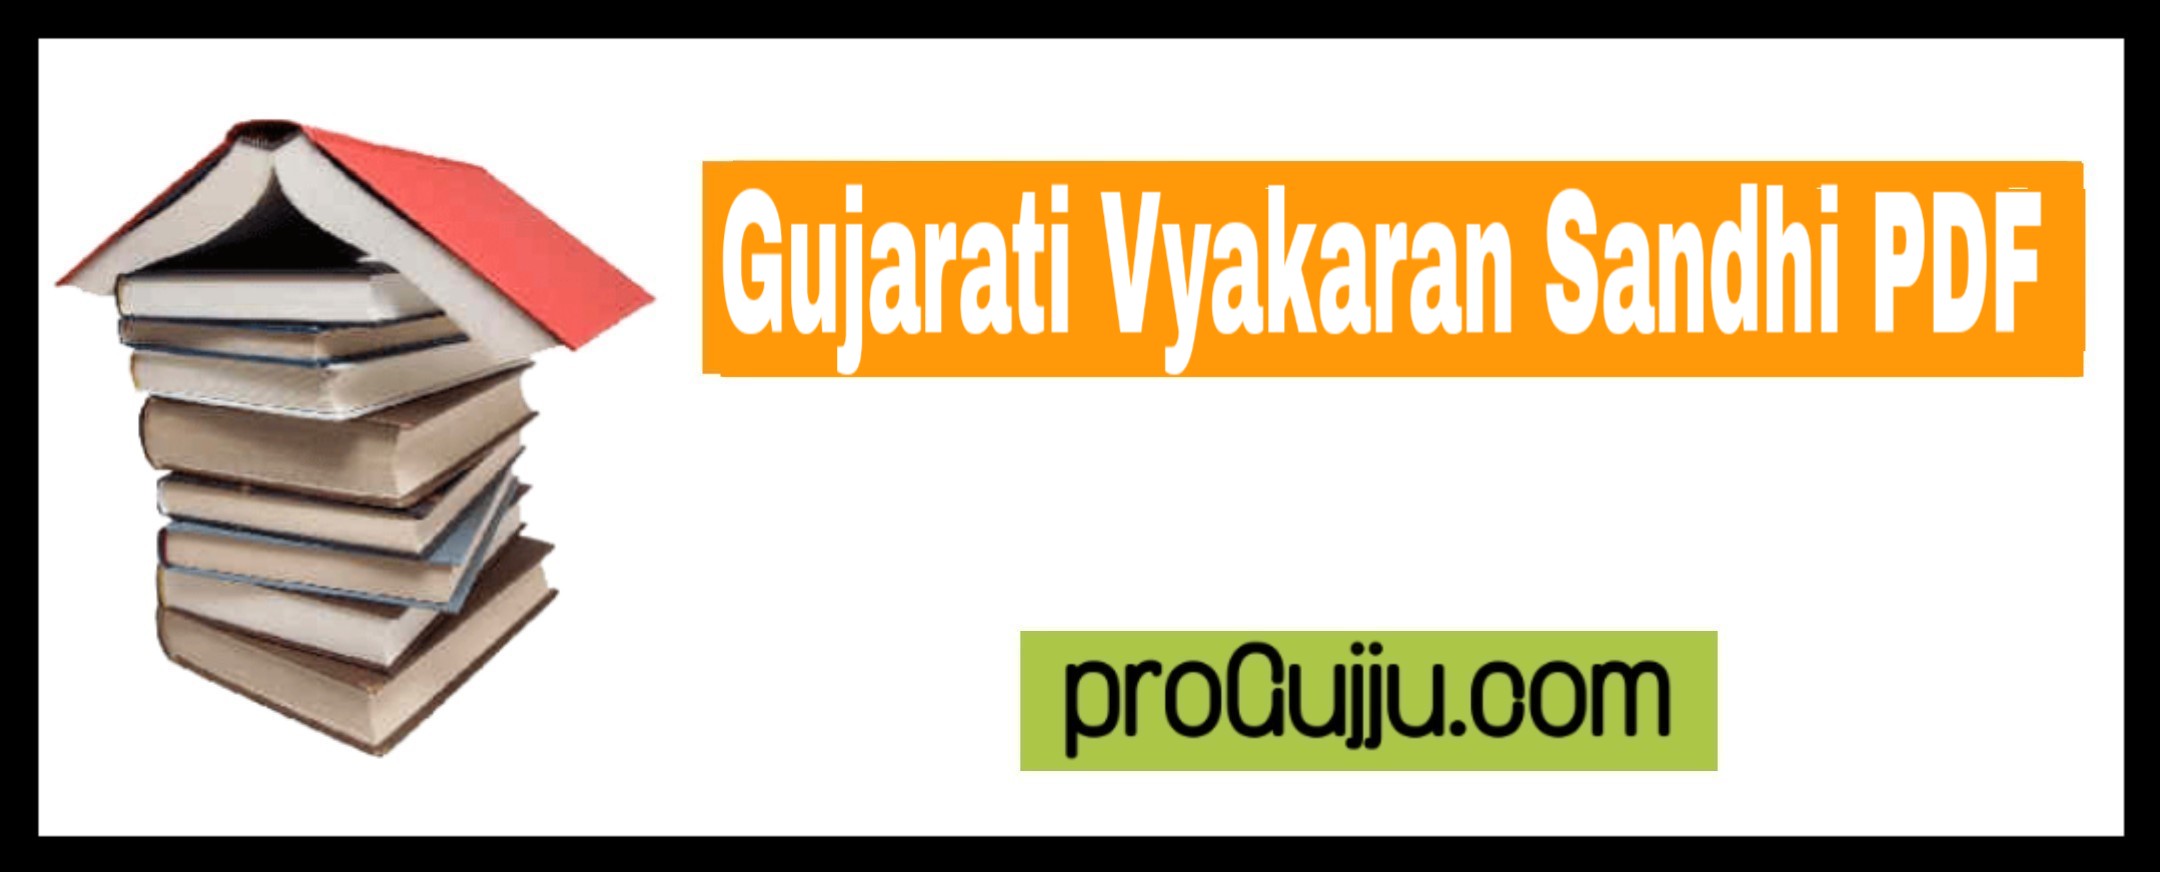 Gujarati Vyakaran Sandhi PDF